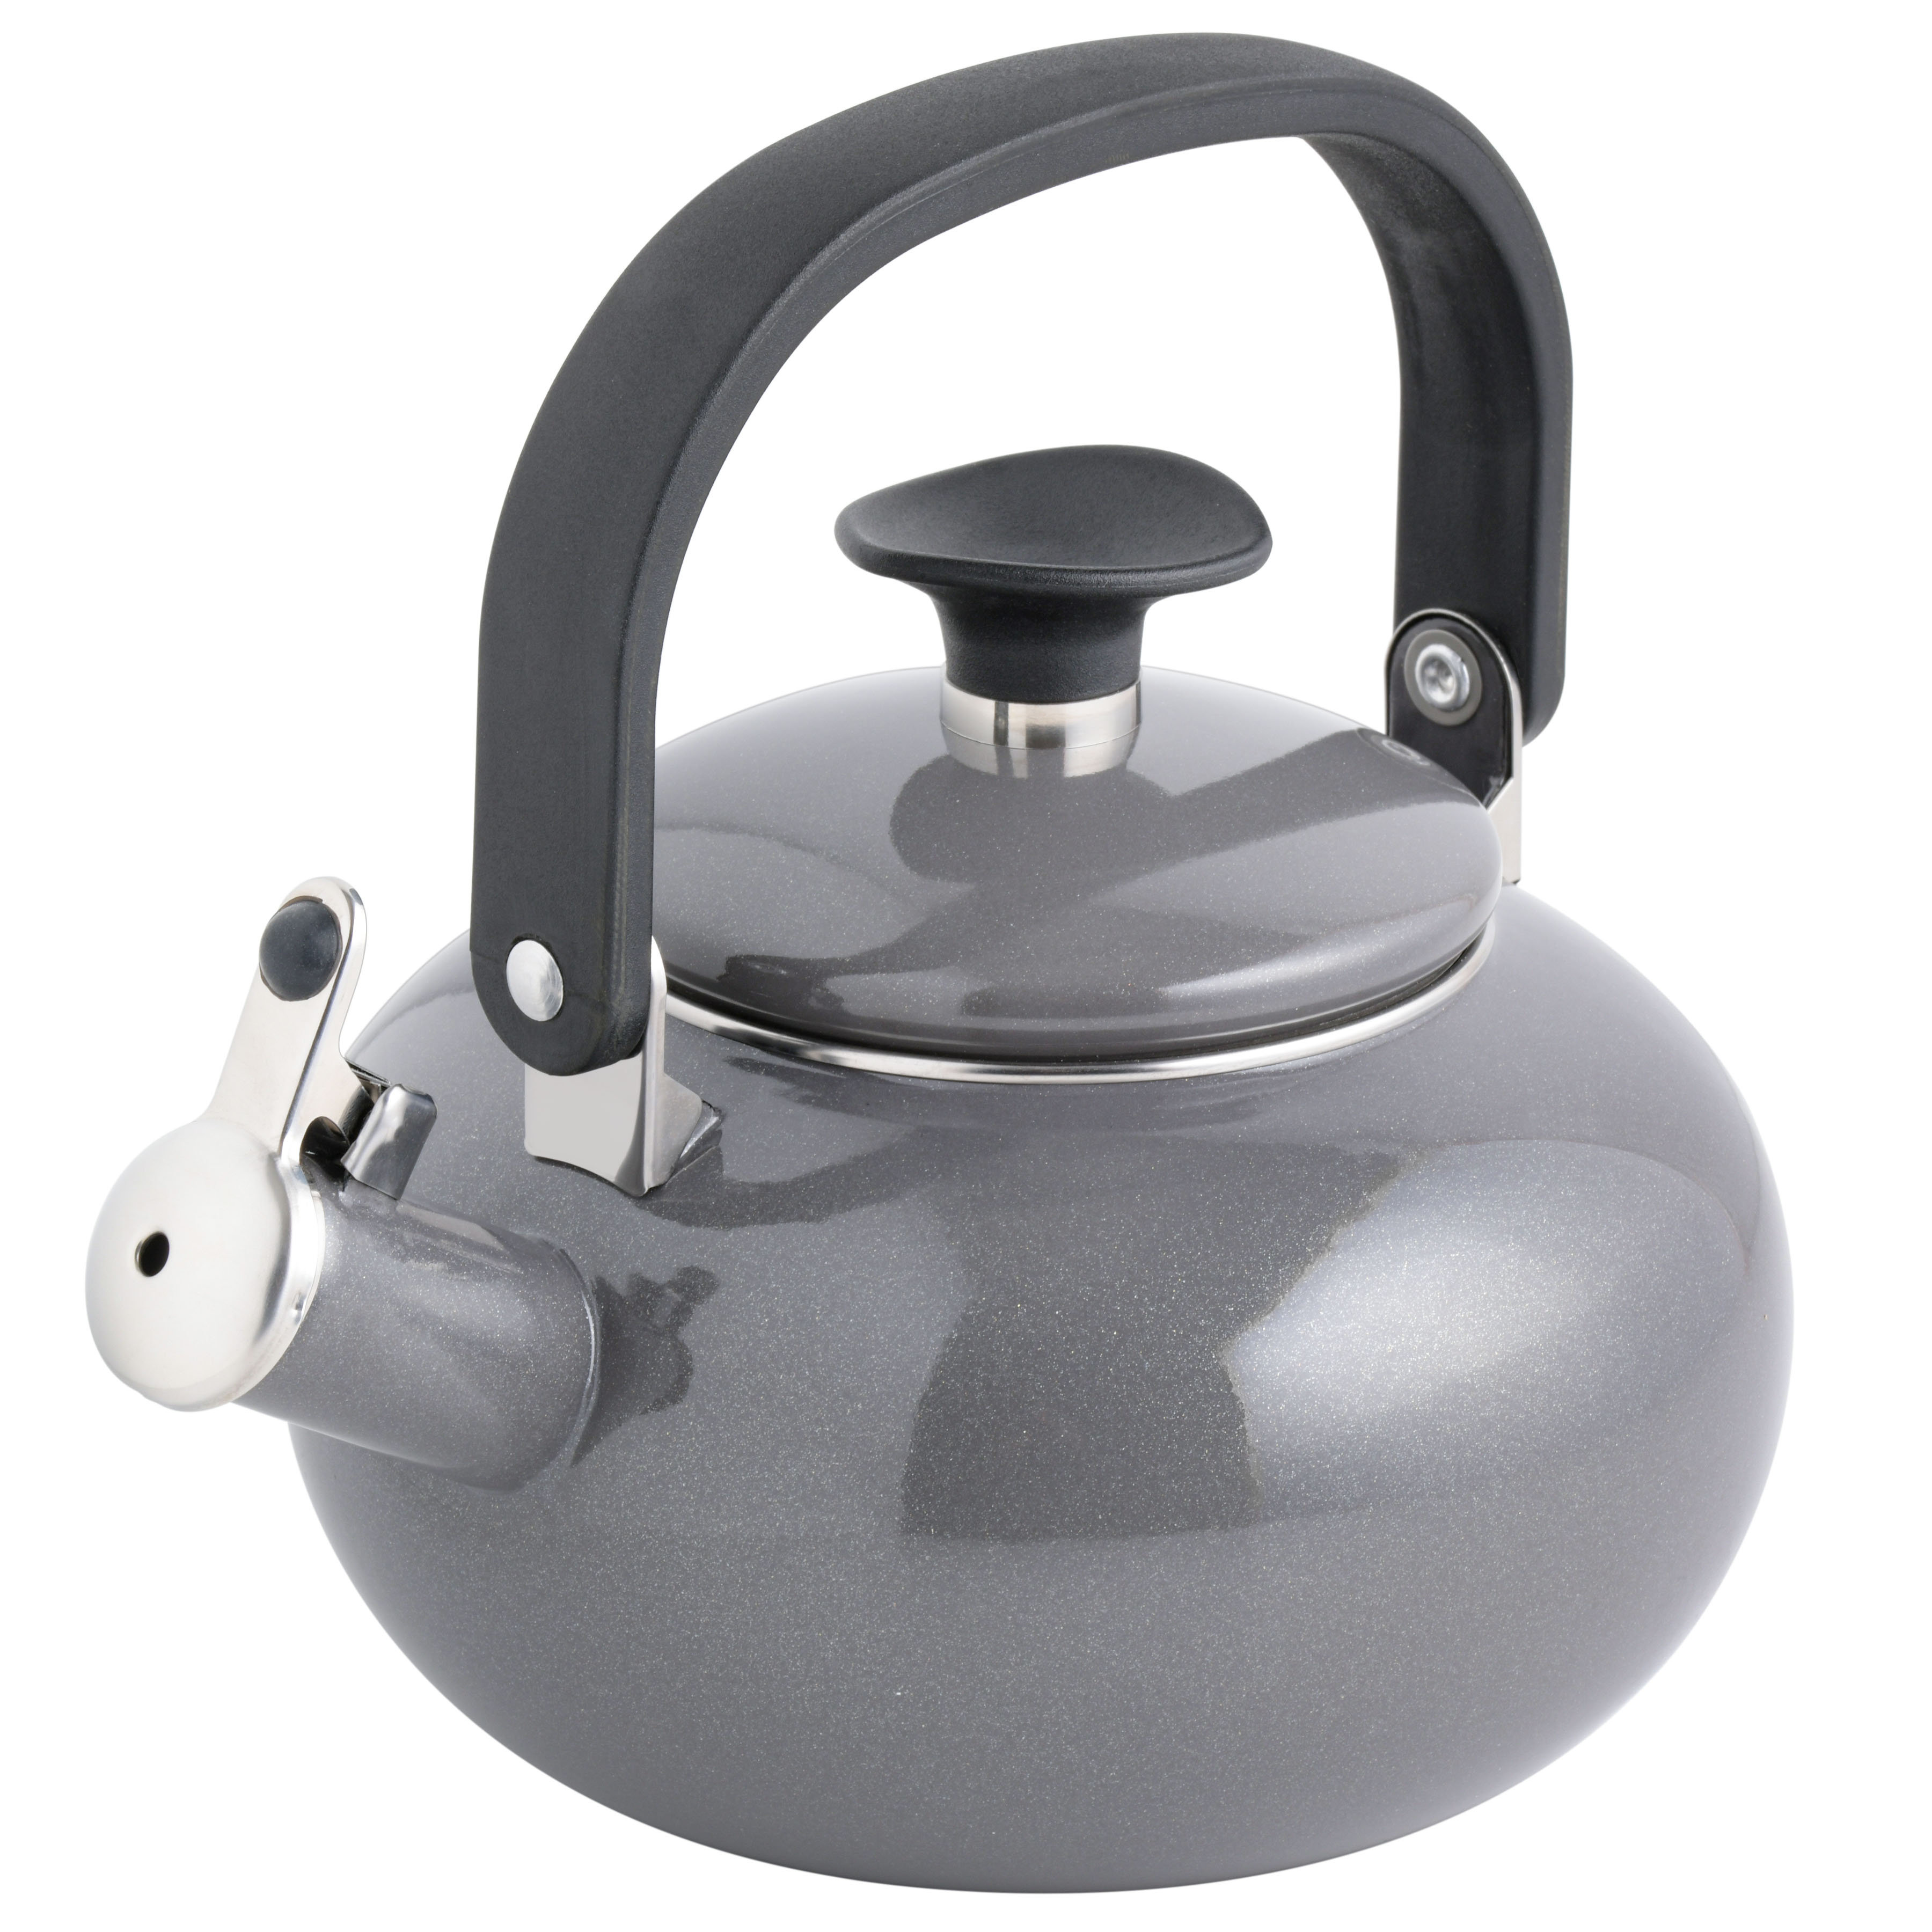 https://assets.wfcdn.com/im/06284880/compr-r85/2446/244655356/kenmore-2-quarts-enamelware-whistling-stovetop-tea-kettle.jpg